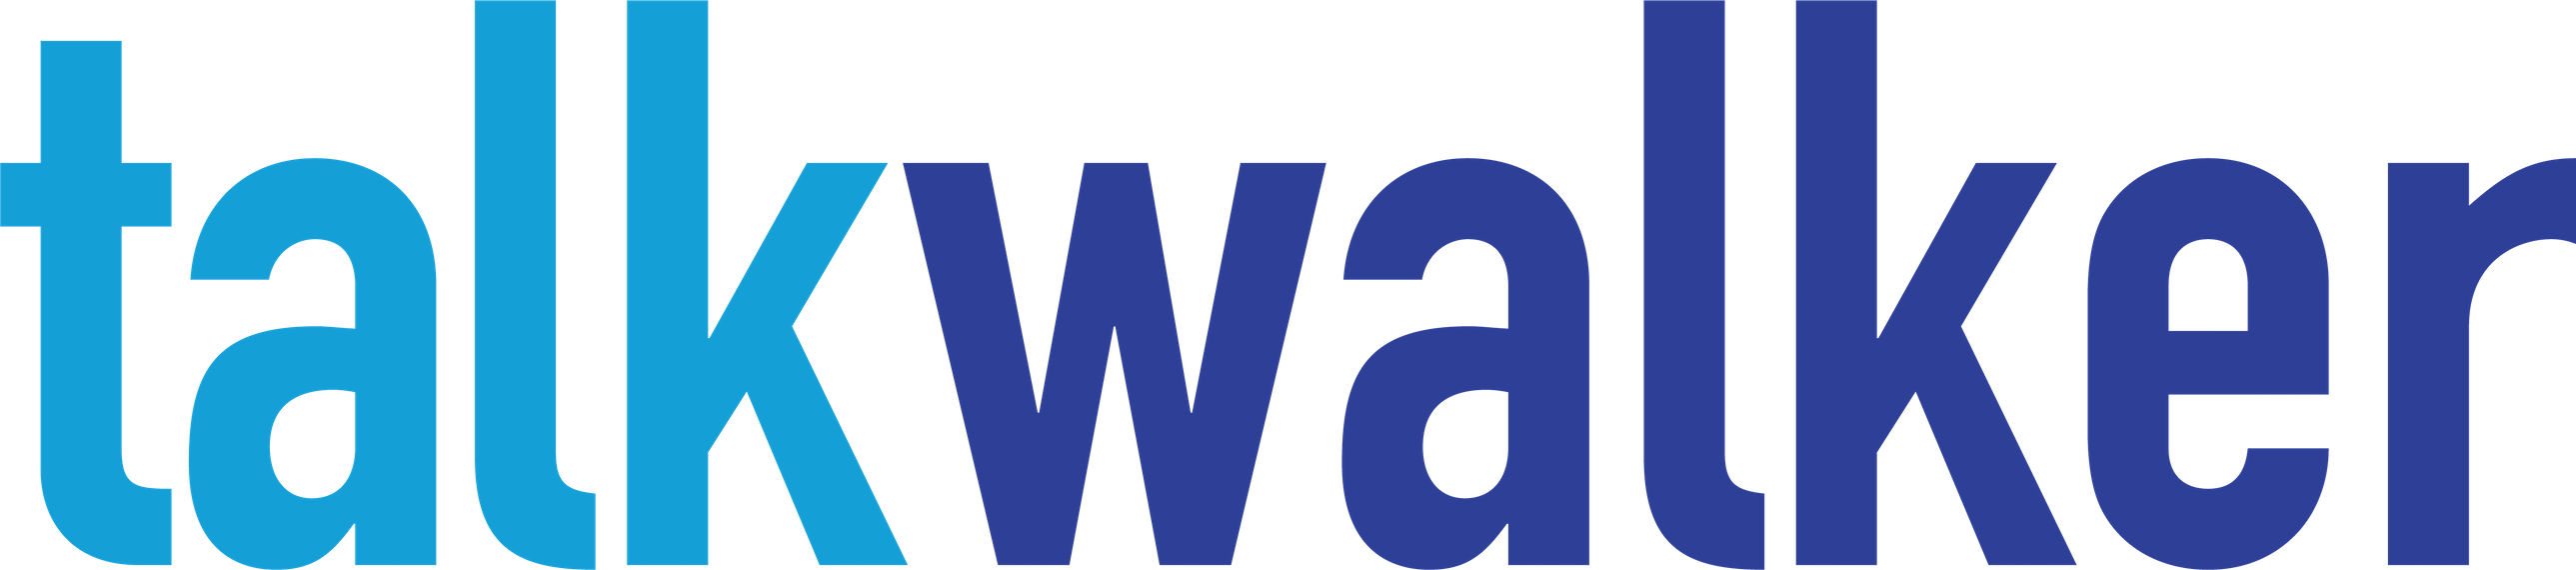 talkwalker_logo